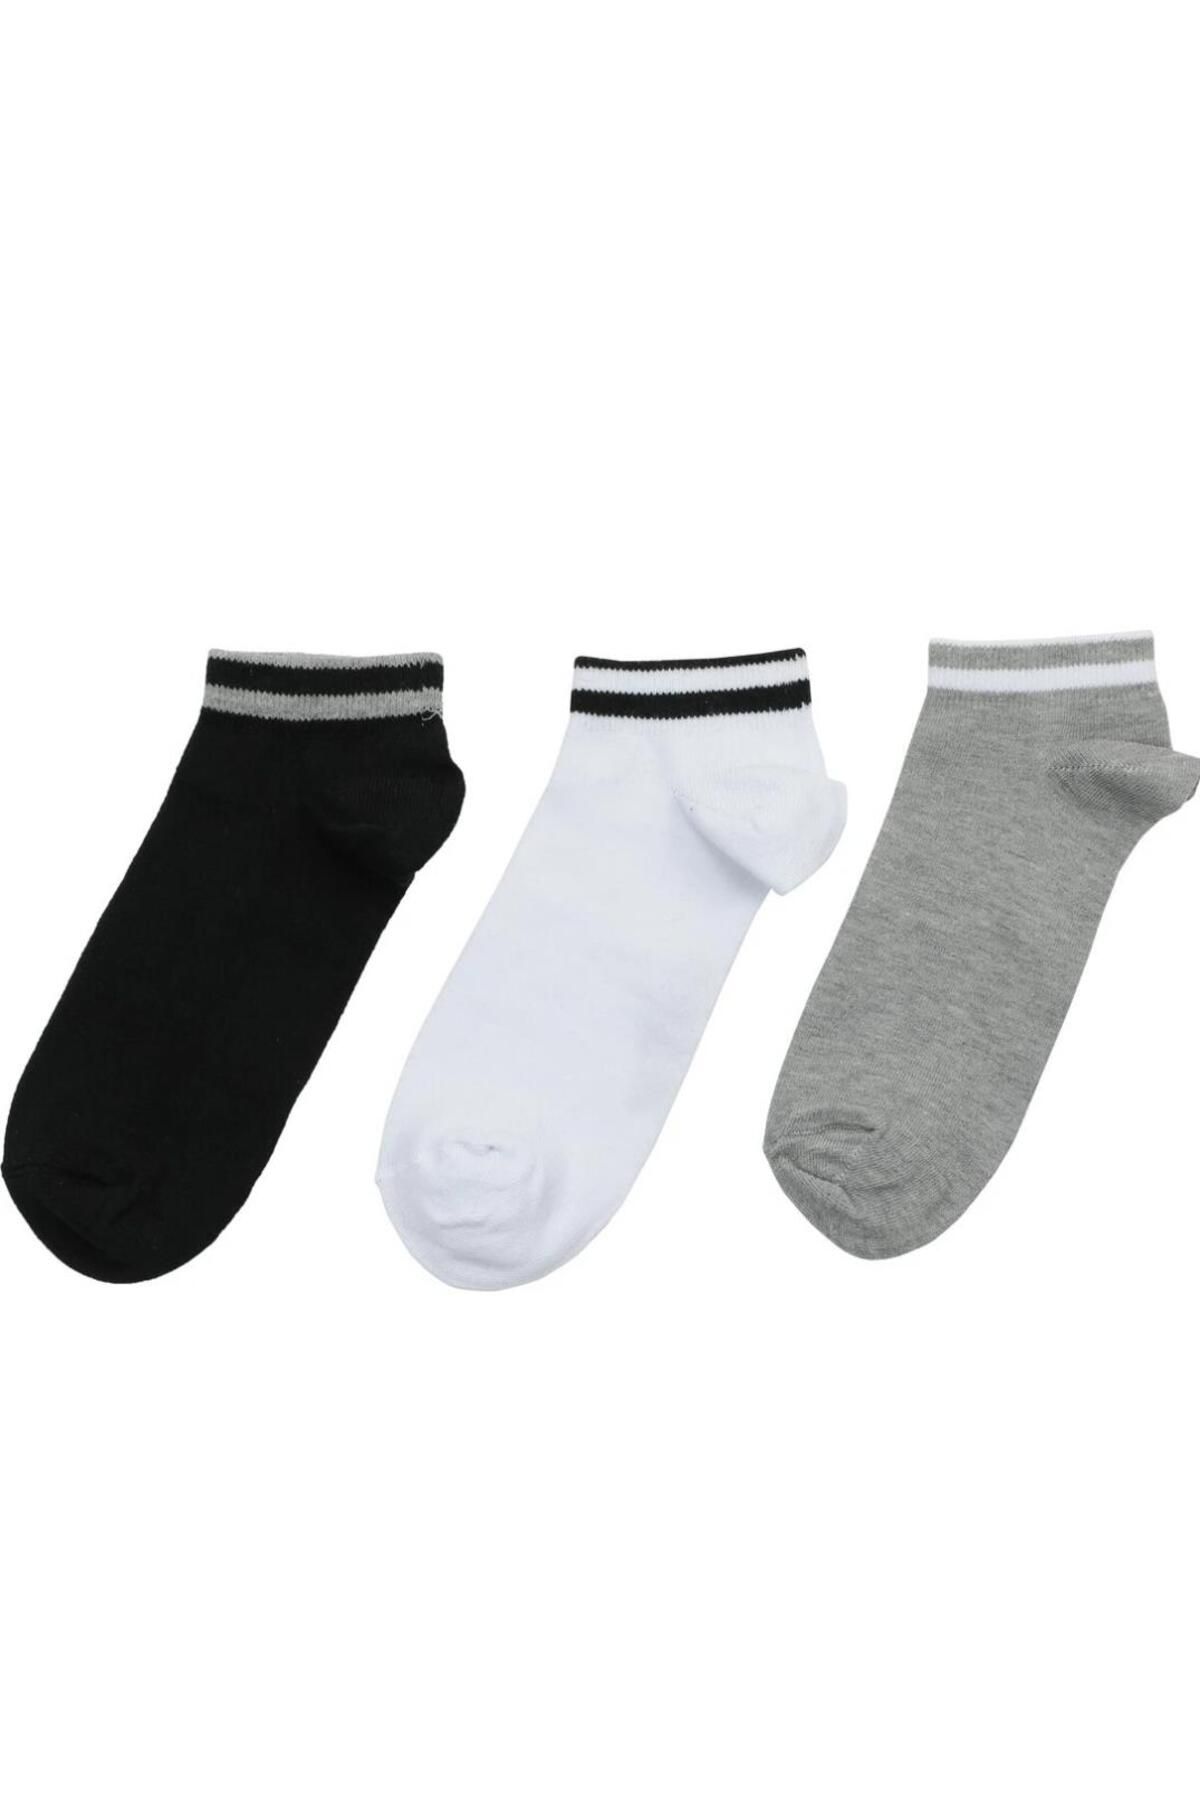 Lumberjack Jace 40/44 Erkek Gri-beyaz-siyah 3 Lü Patik Çorap